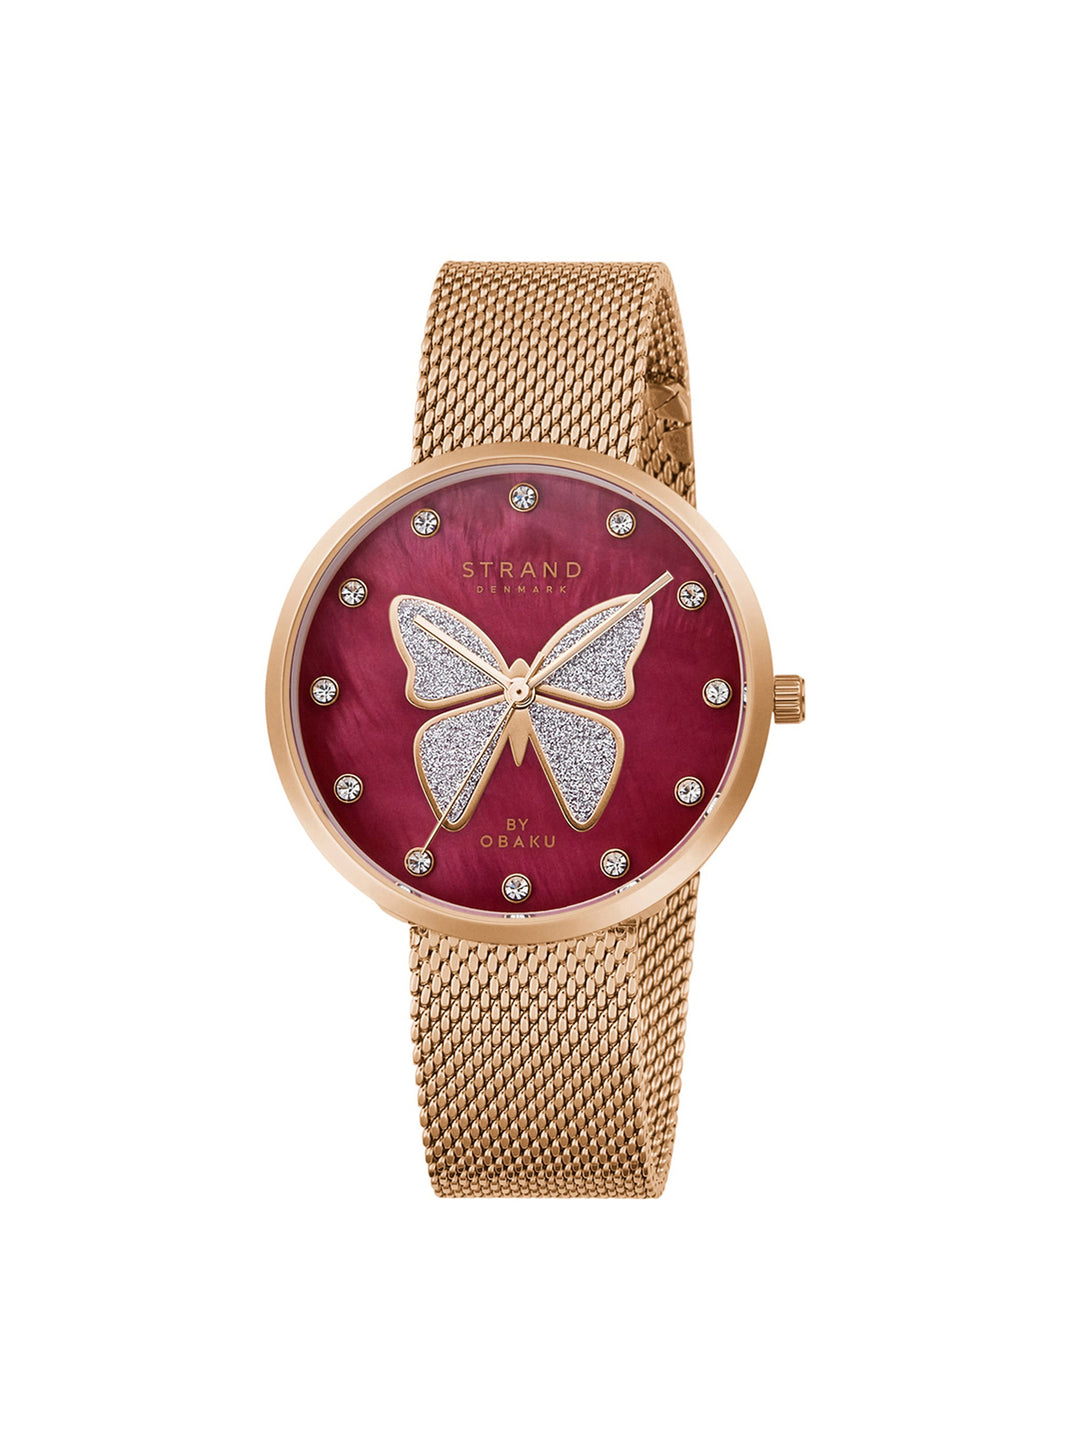 Glitter Butterfly Quartz Women's Watch - S700LXVDMV-DB